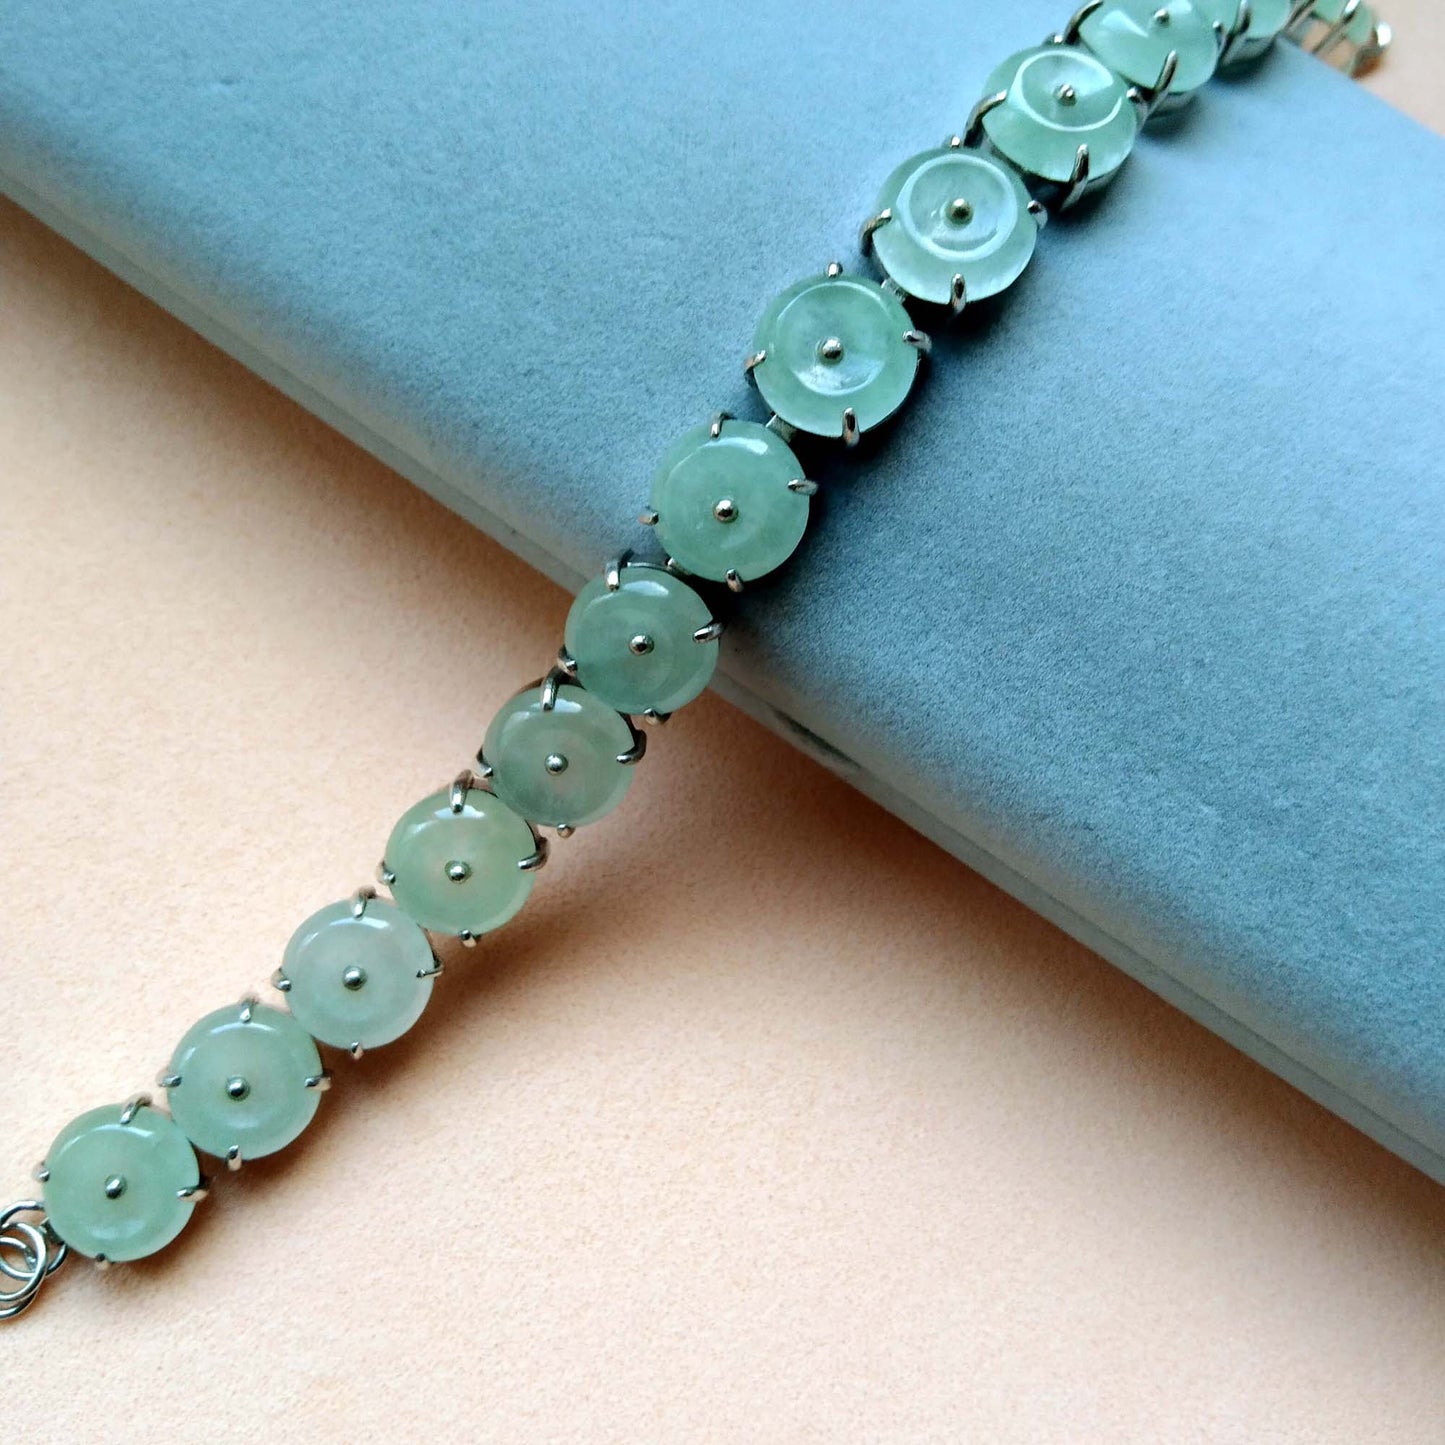 Quite a rare jade bracelet design